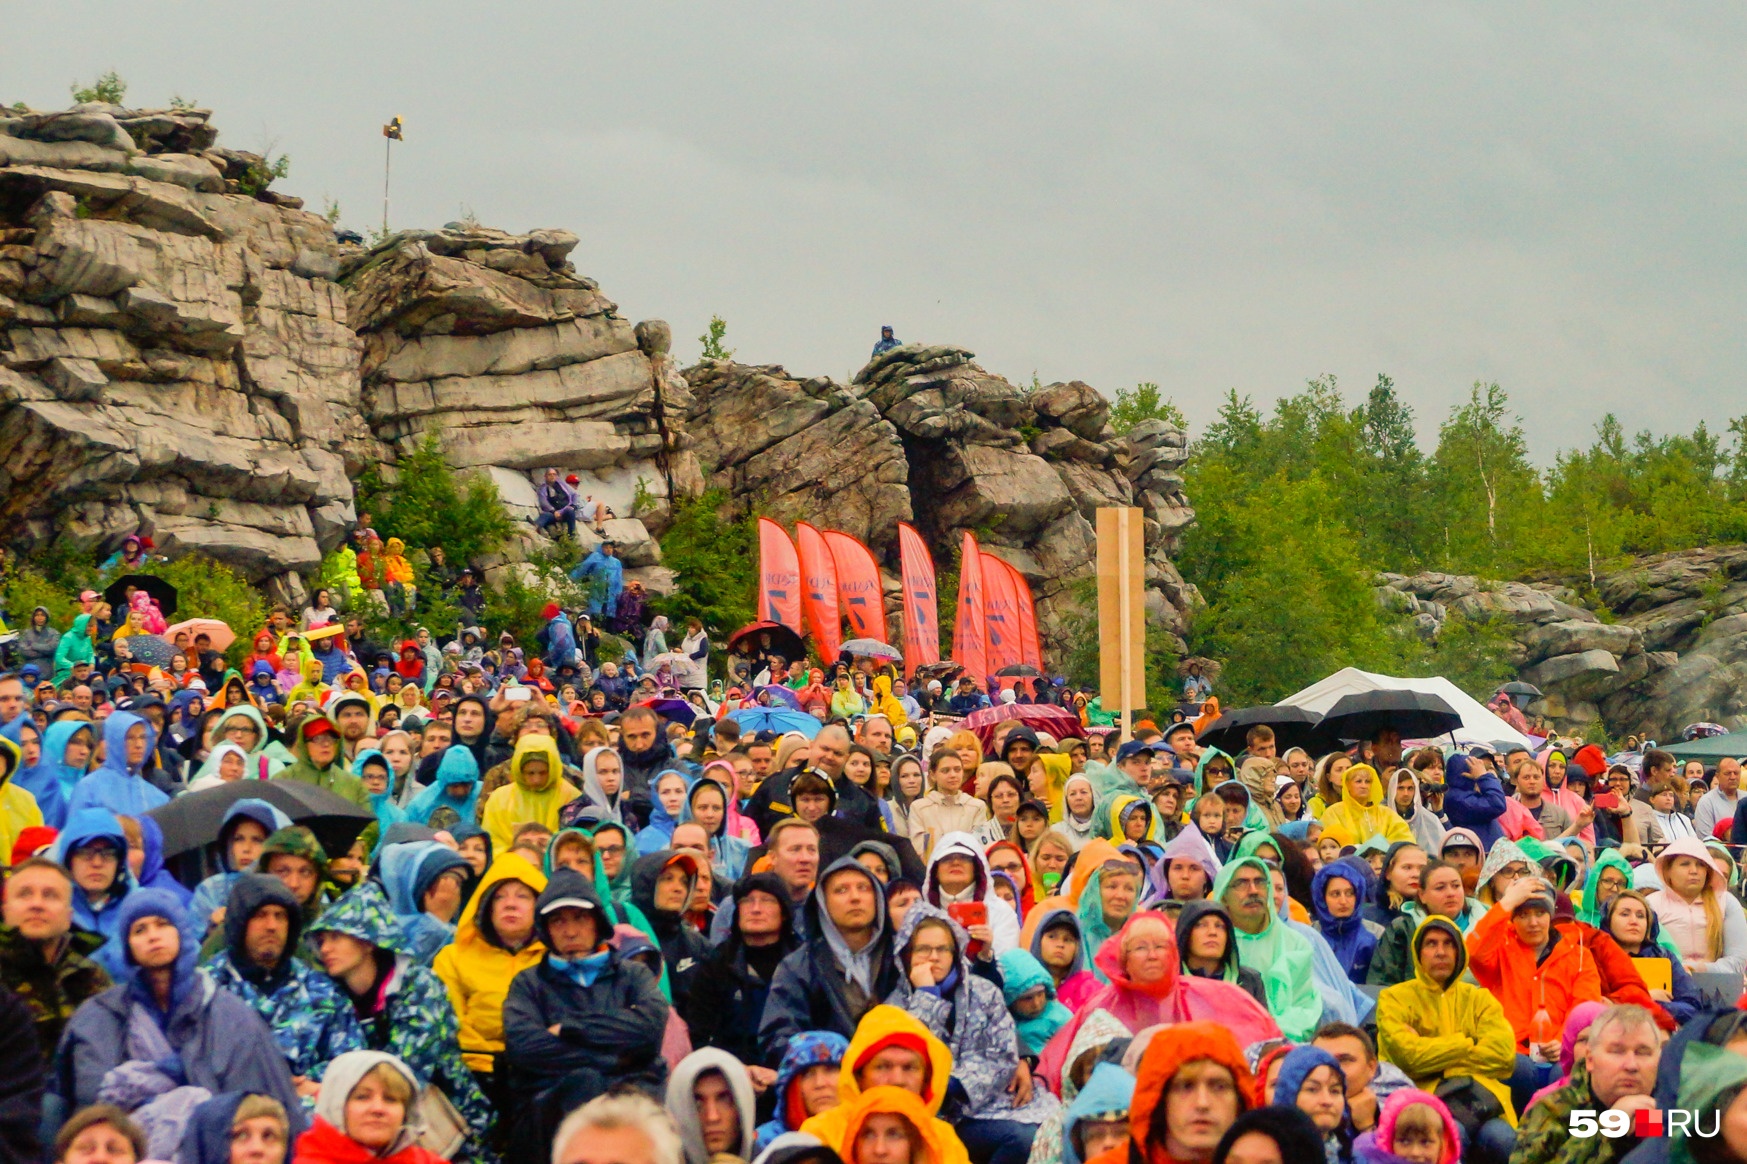 Зрители фестиваля на горе Крестовой готовы к капризам погоды